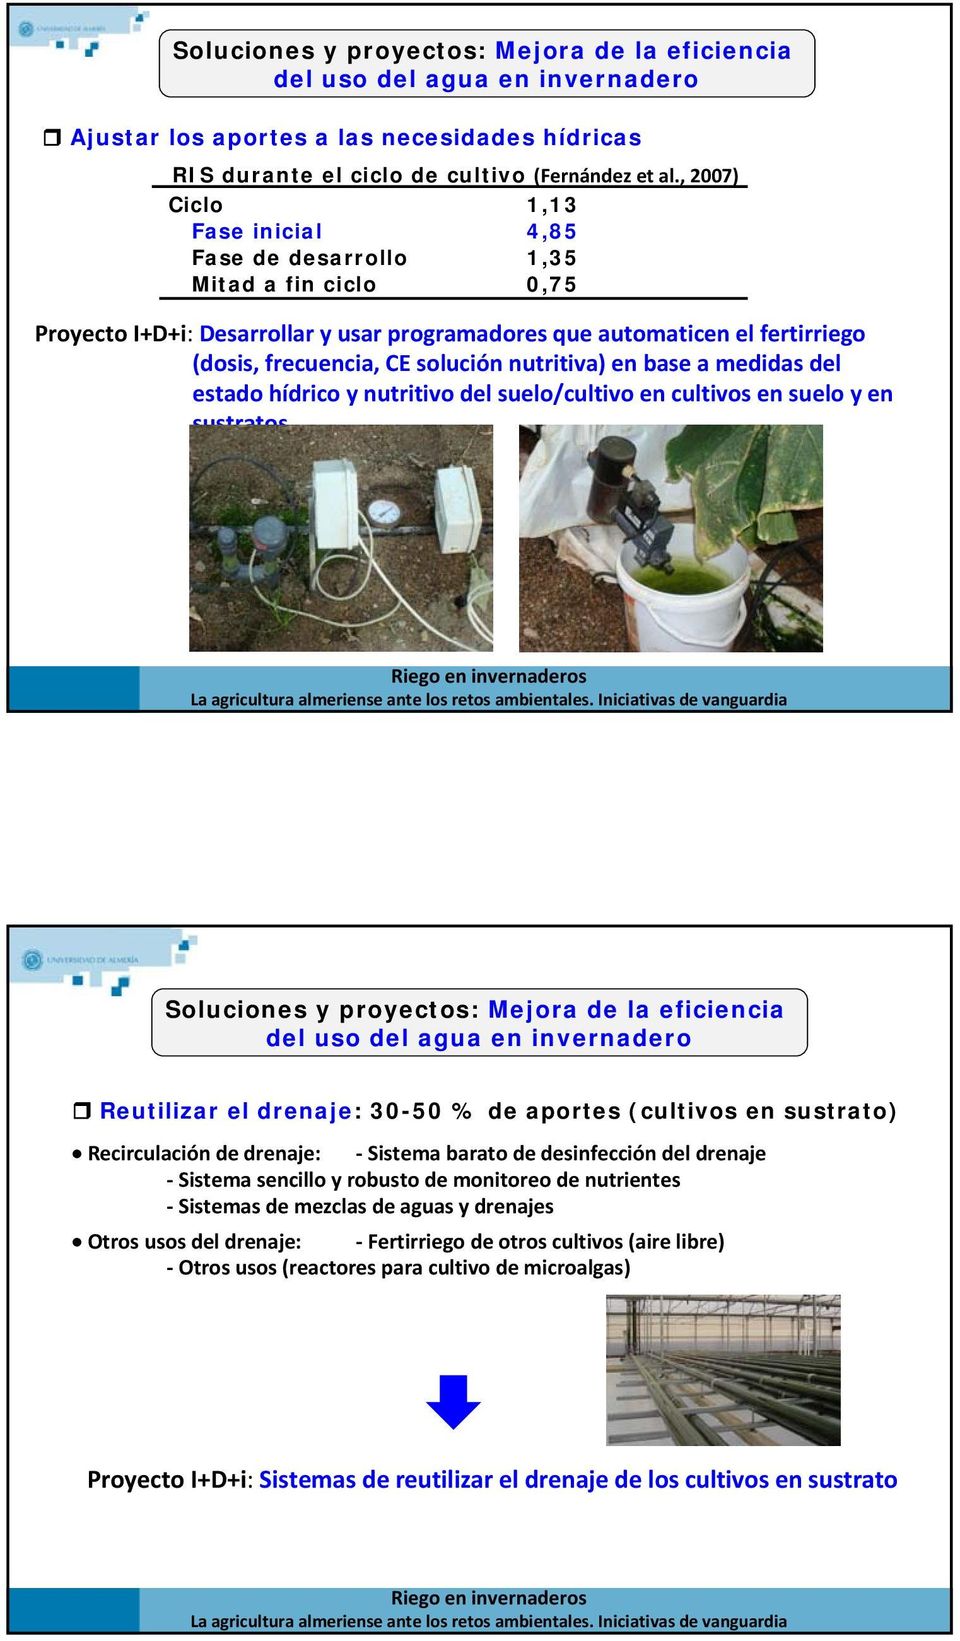 nutritiva) en base a medidas del estado hídrico y nutritivo del suelo/cultivo en cultivos en suelo y en sustratos Mejora de la eficiencia del uso del agua en invernadero Reutilizar el drenaje: 30-50